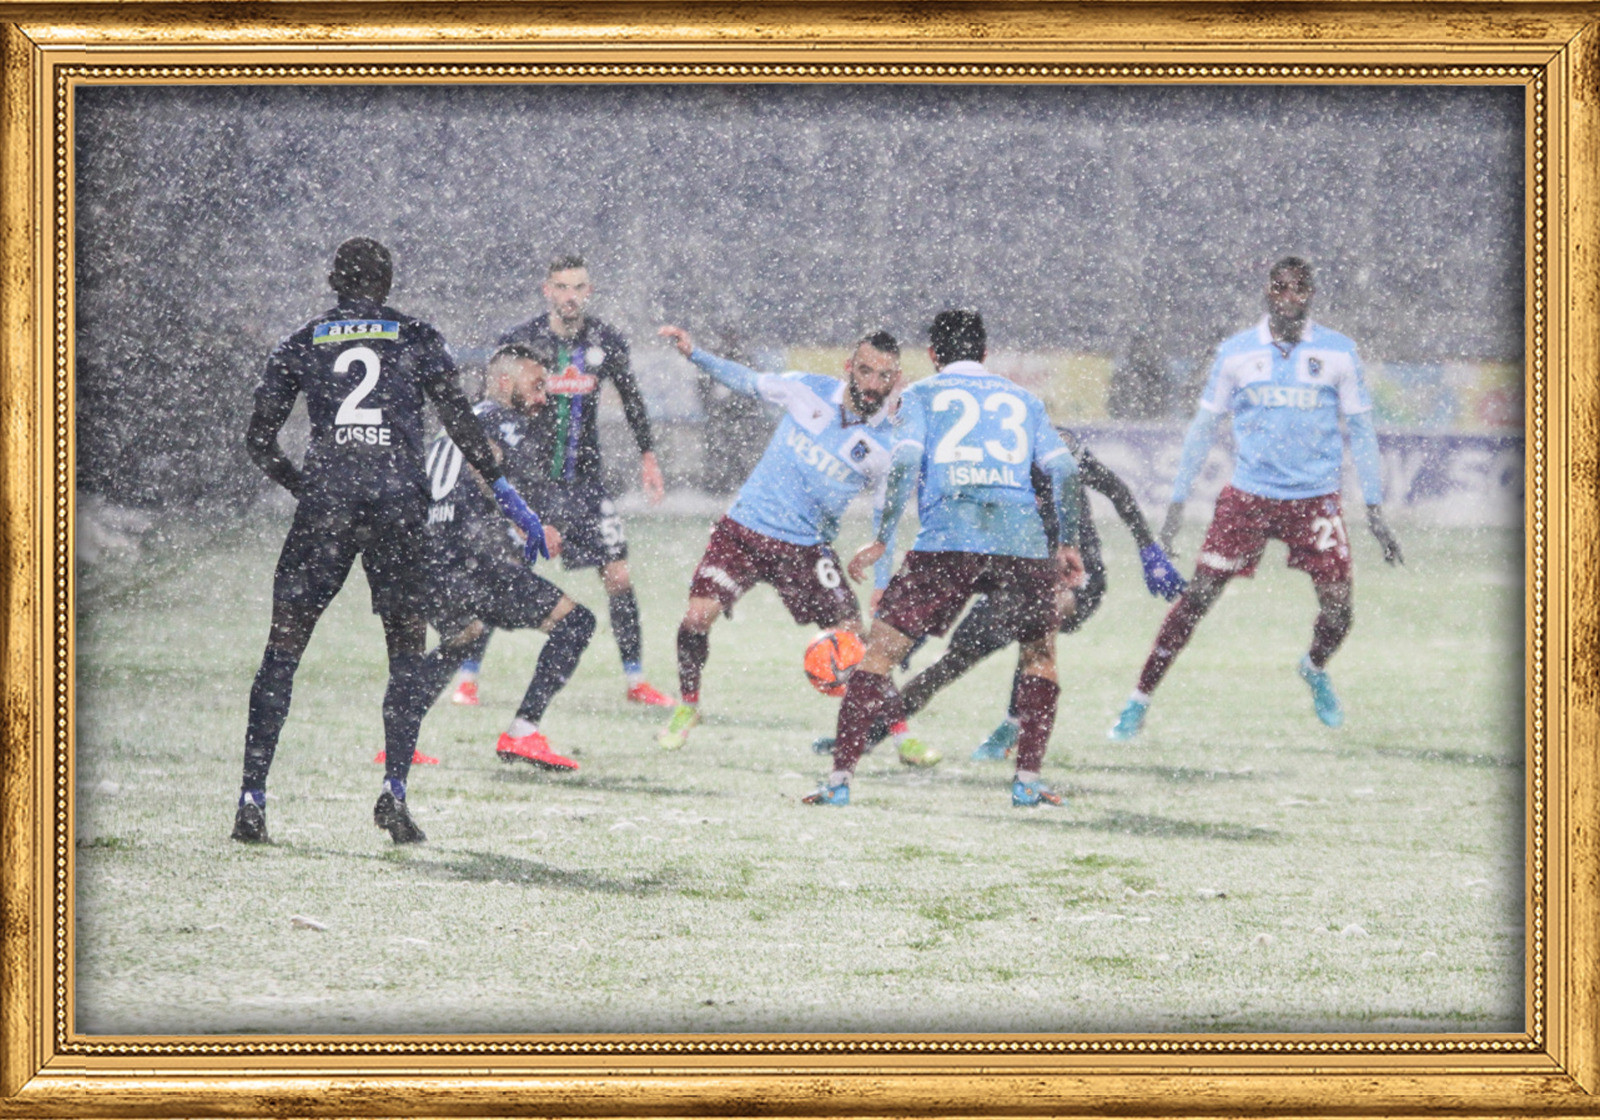 Rizespor-Trabzonspor karşılaşması yoğun kar yağışı altında oynandı.